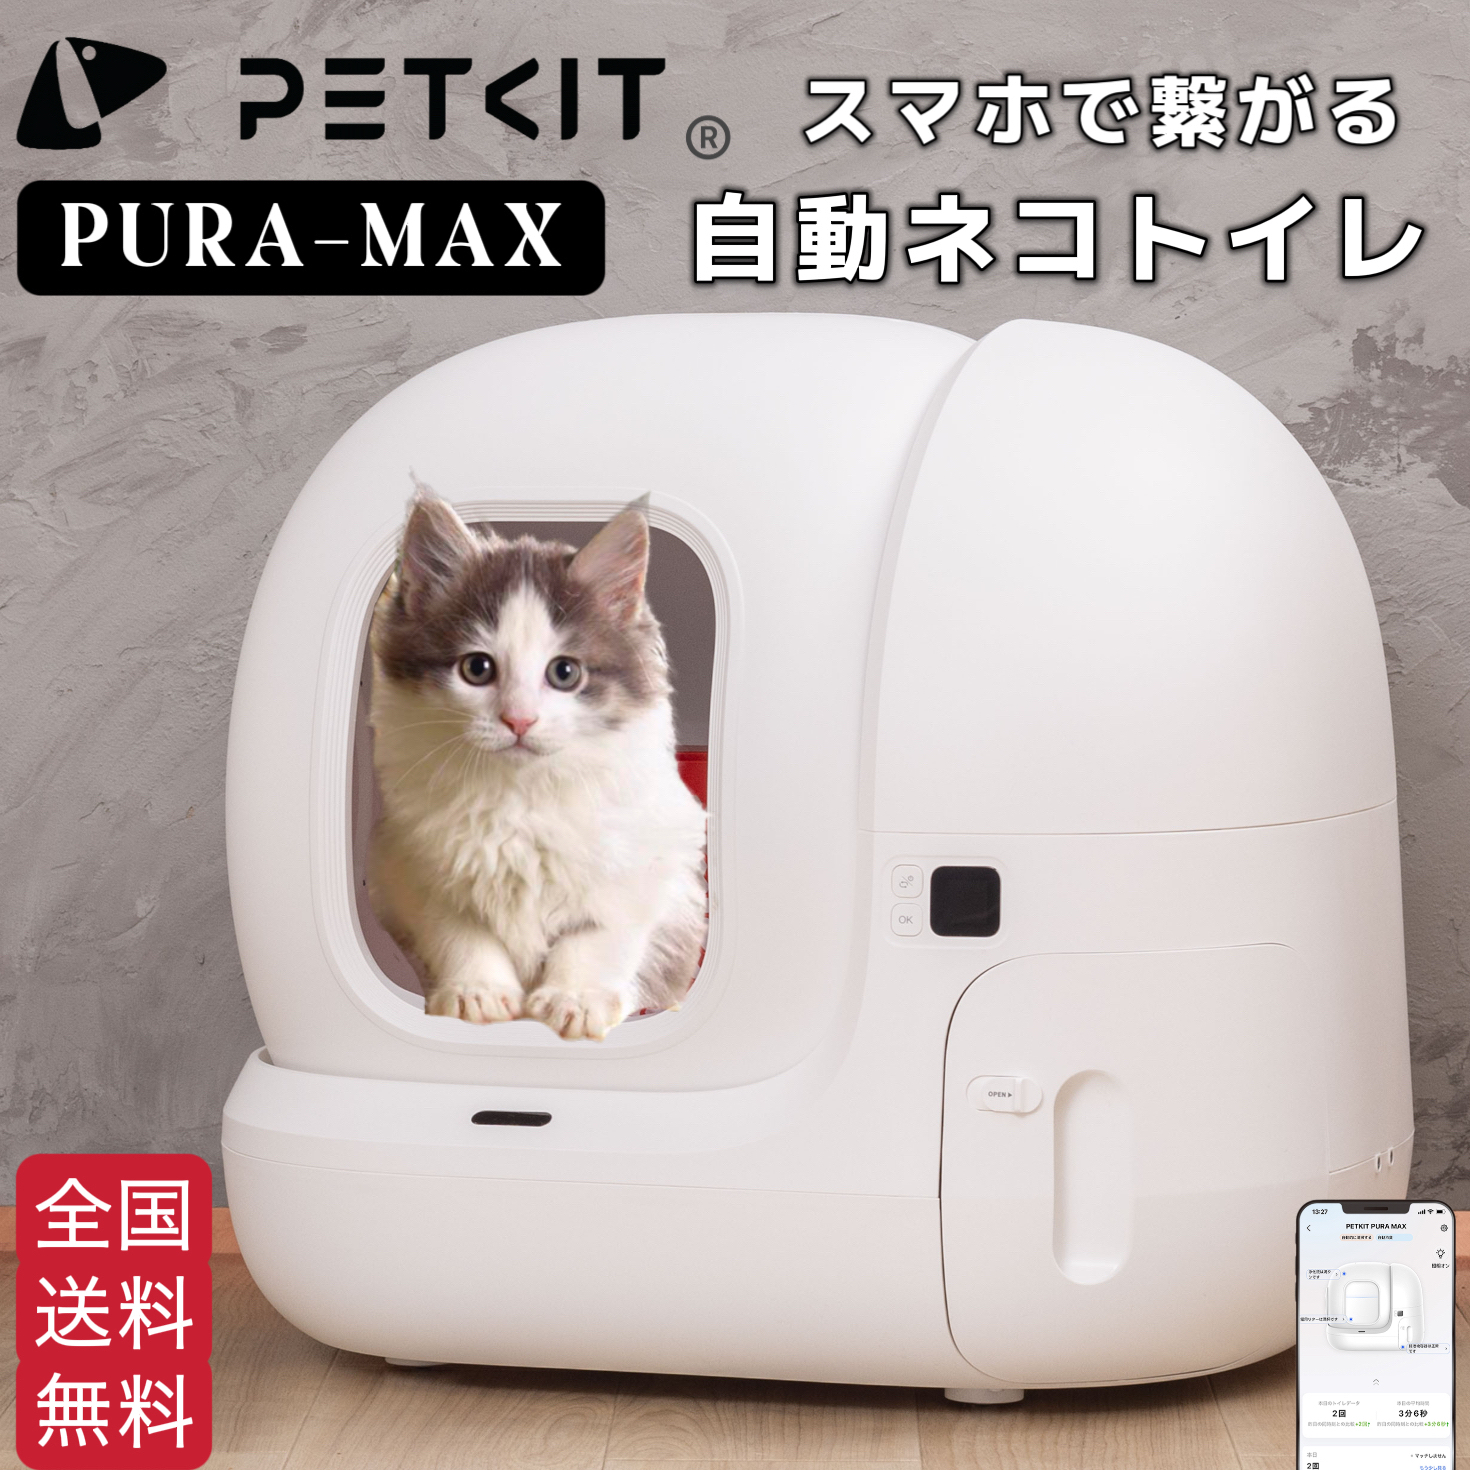 自動猫用トイレ ペットキット 自動ネコトイレ ペットキット